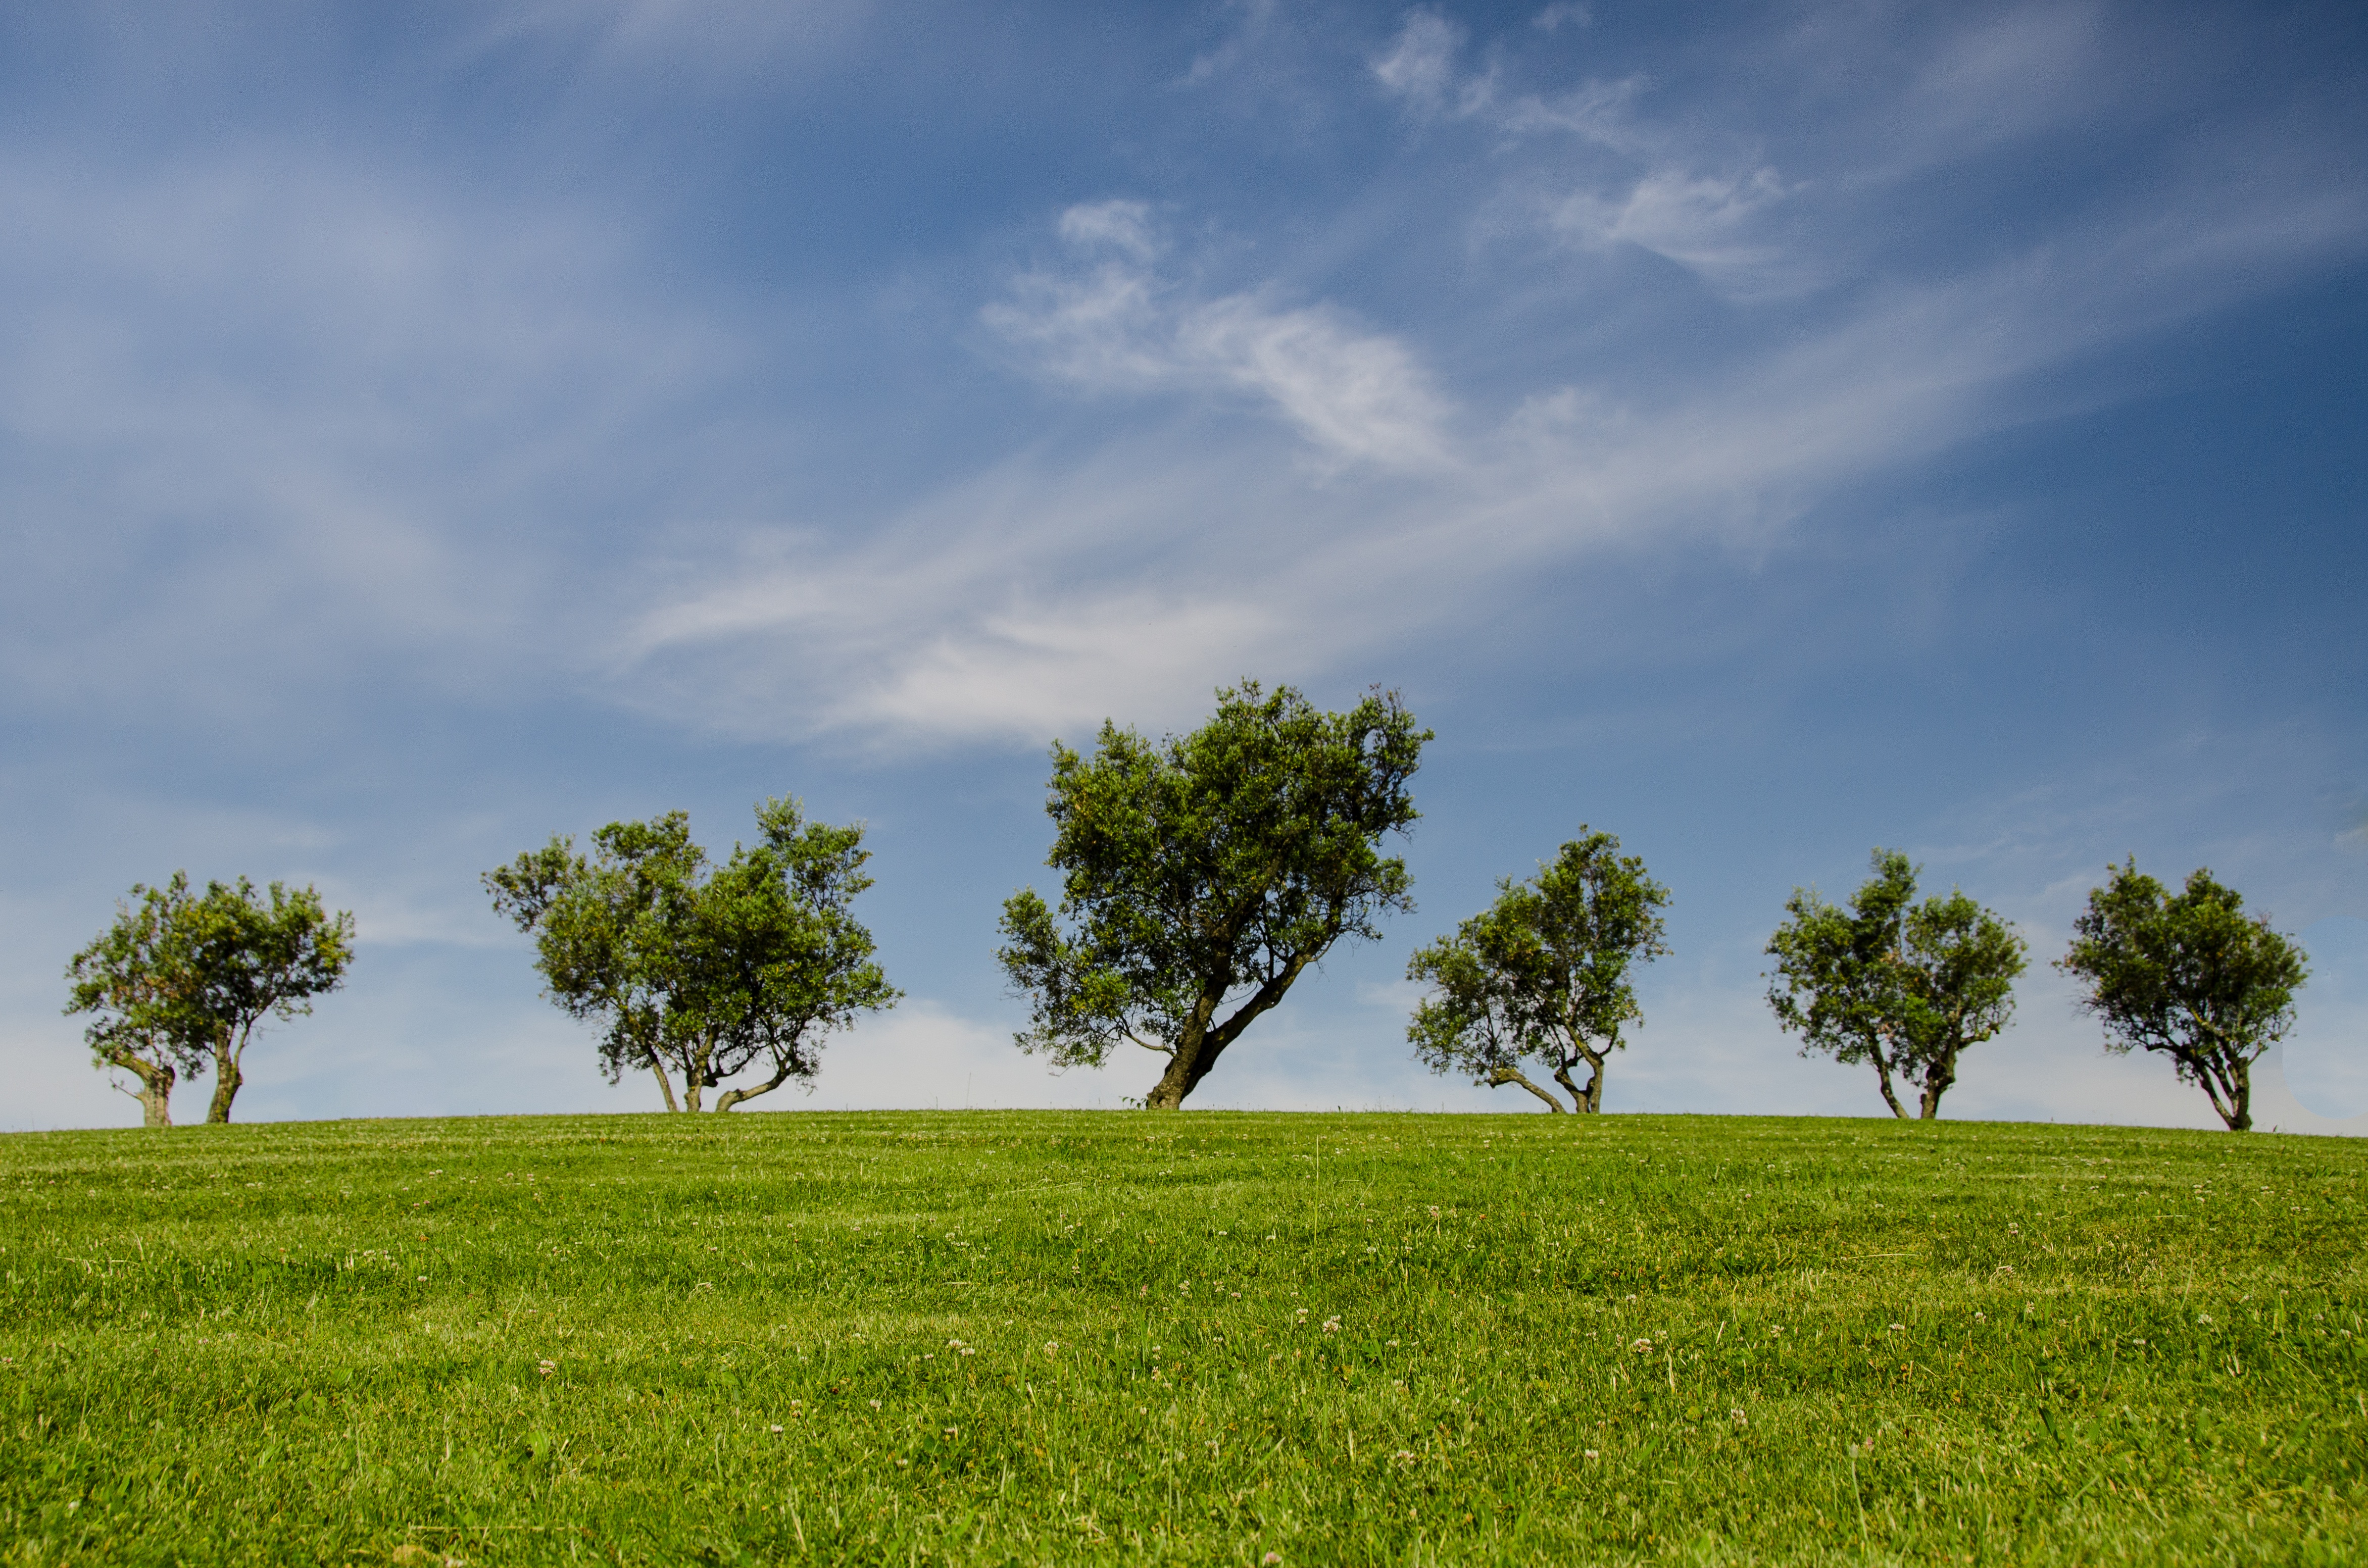 Саванна с зеленой травой на поле с деревьями